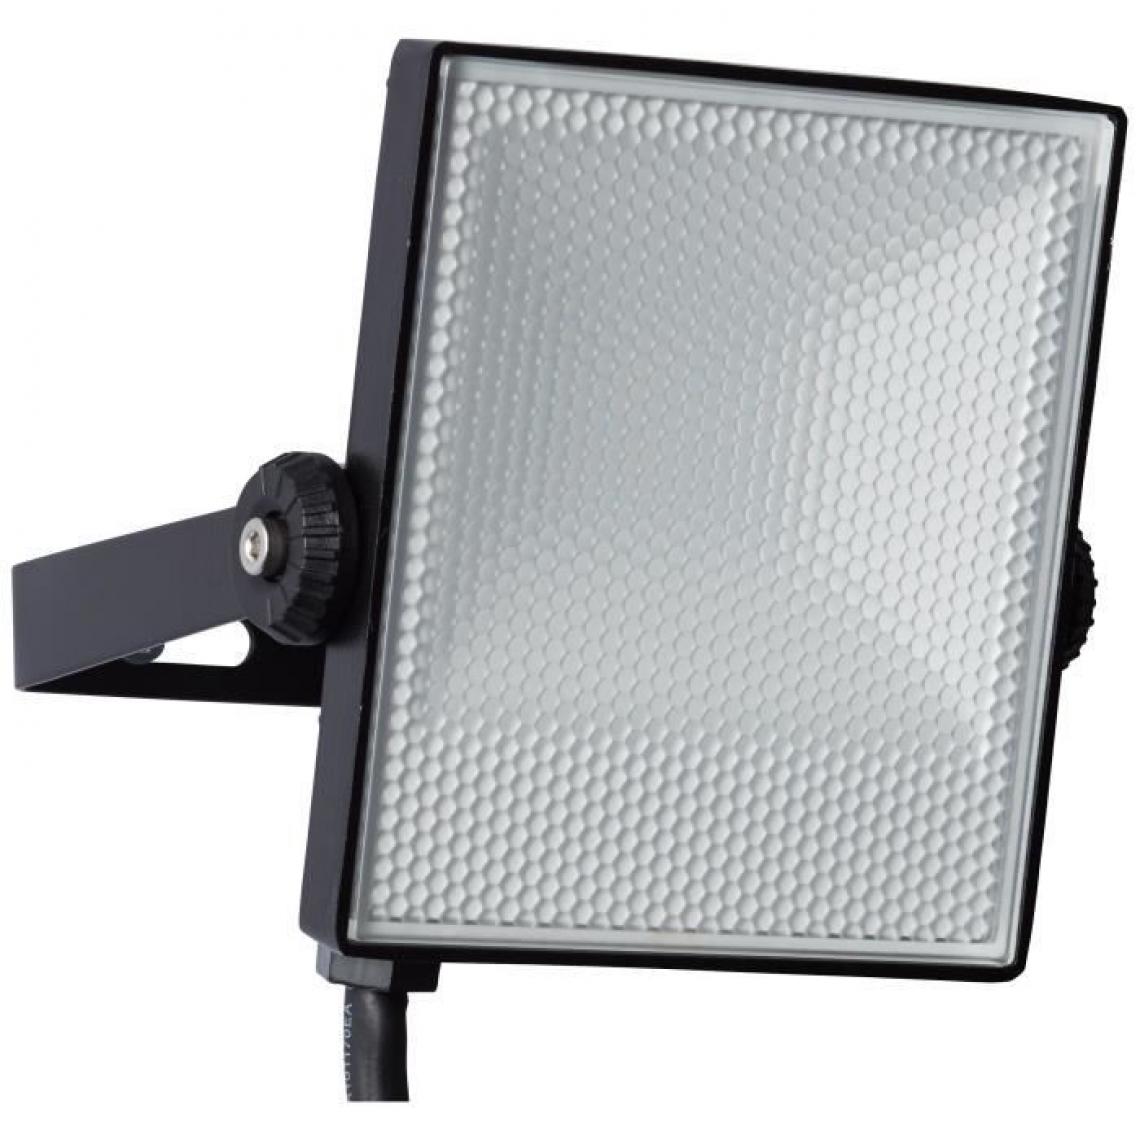 Brilliant - Projecteur extérieur LED Dryden - 10 W - IP65 - Métal et plastique - Noir - Spot, projecteur